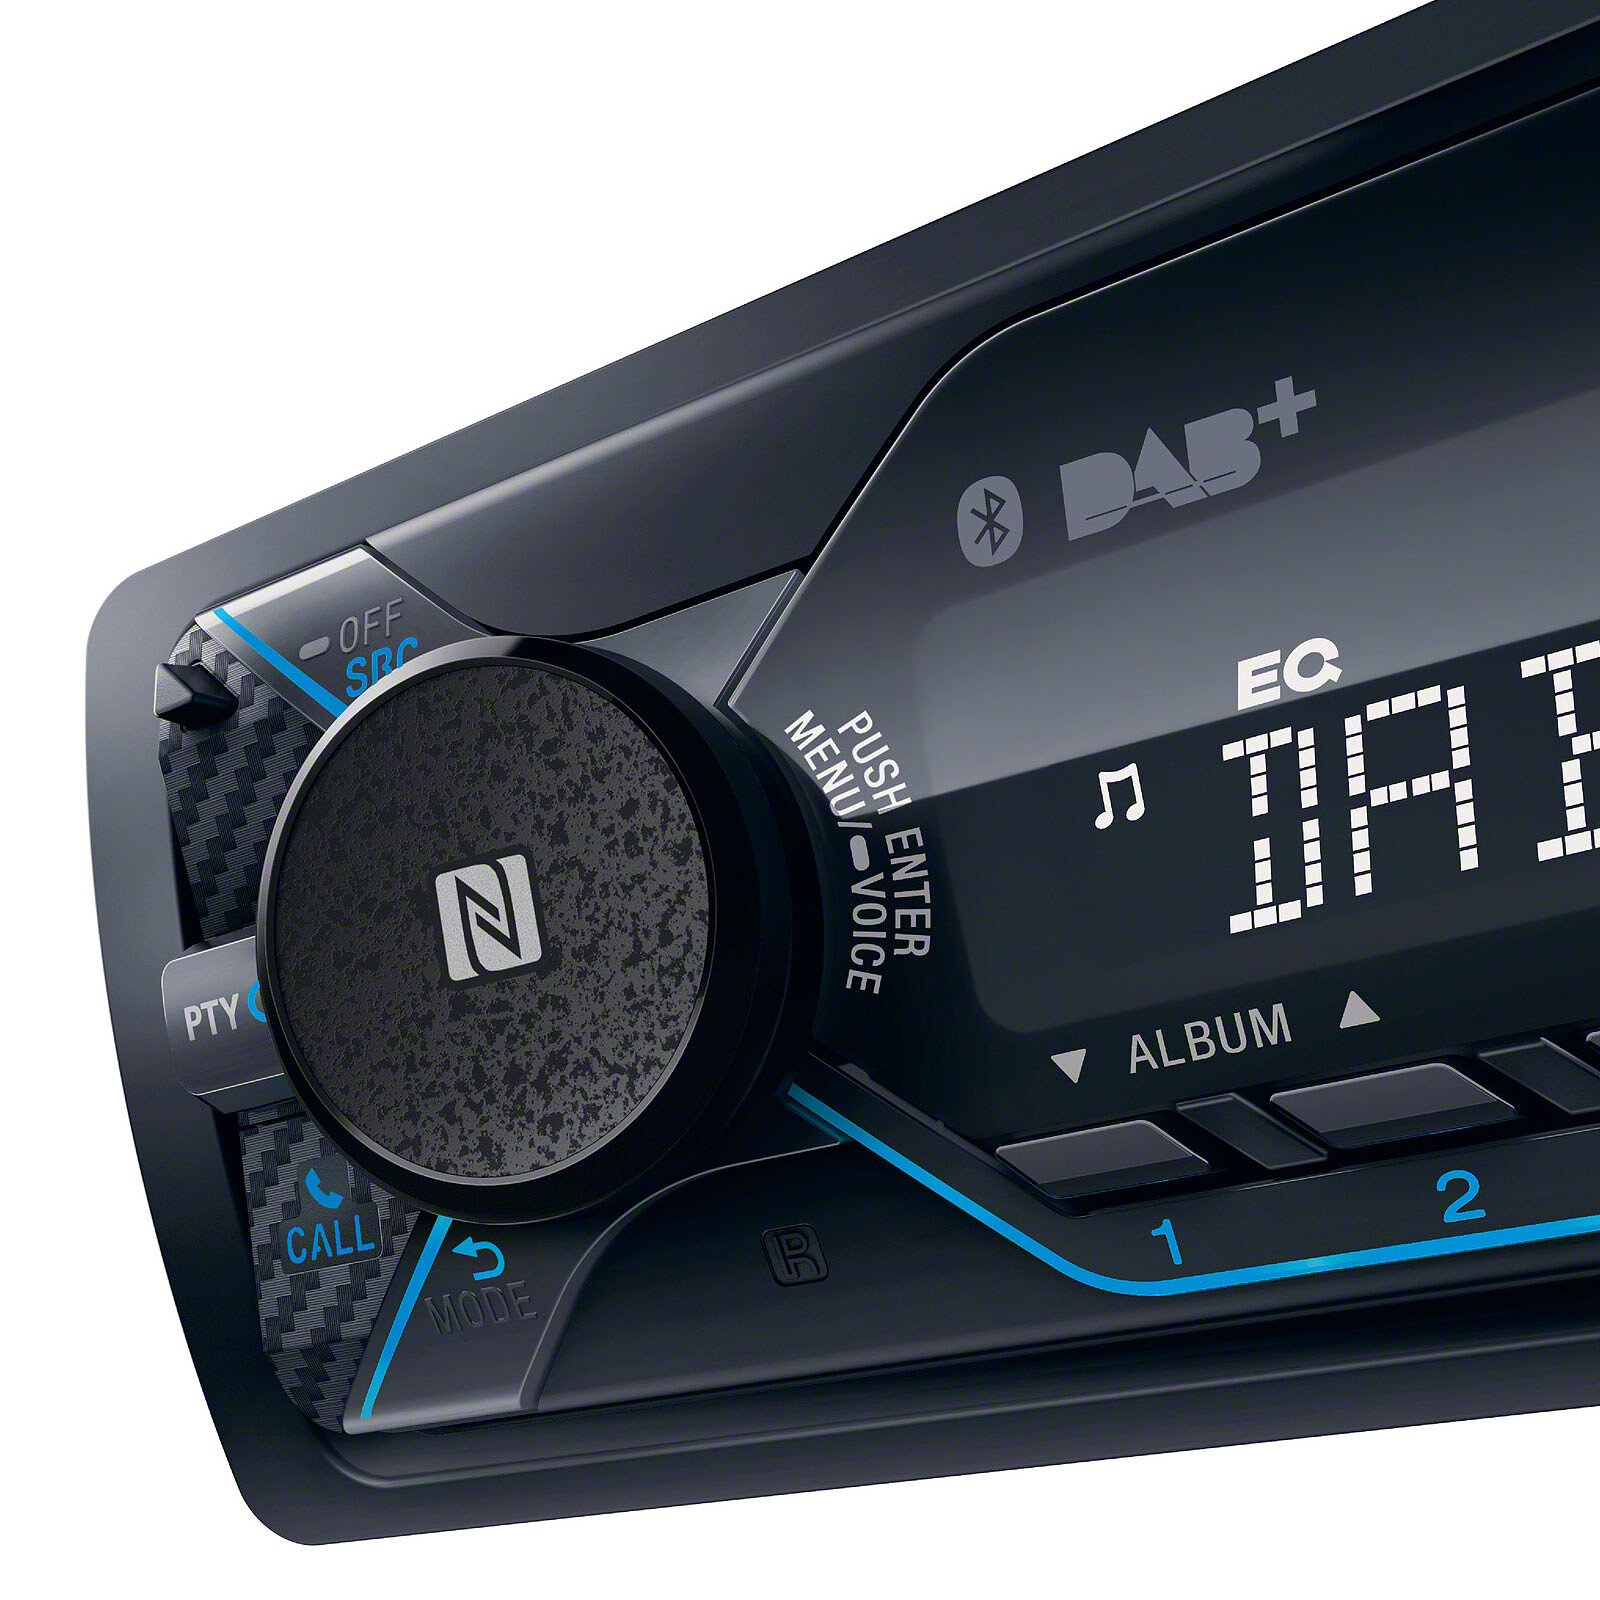 CDX-G1200U Autoradio SONY Android MP3,CD,USB,AUX - Dali-KeyElectronics